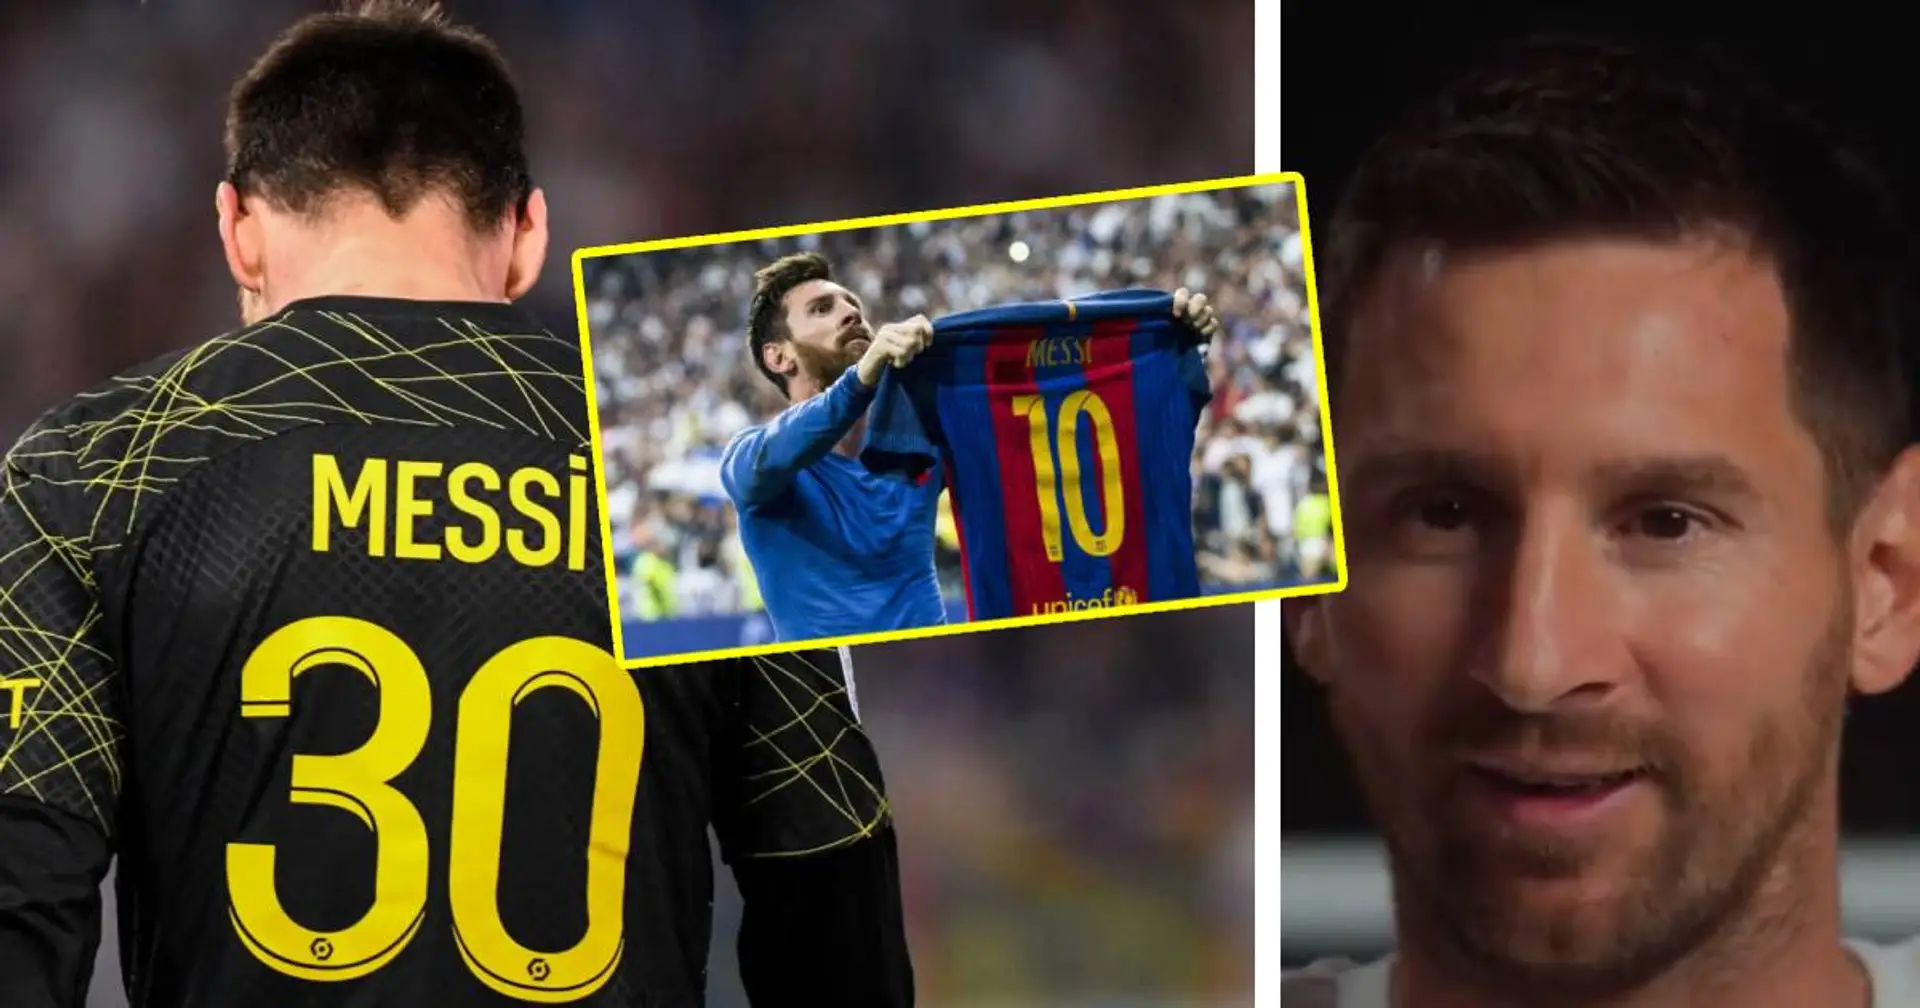 "Ca m’a quand même manqué" : Messi évoque un regret au PSG